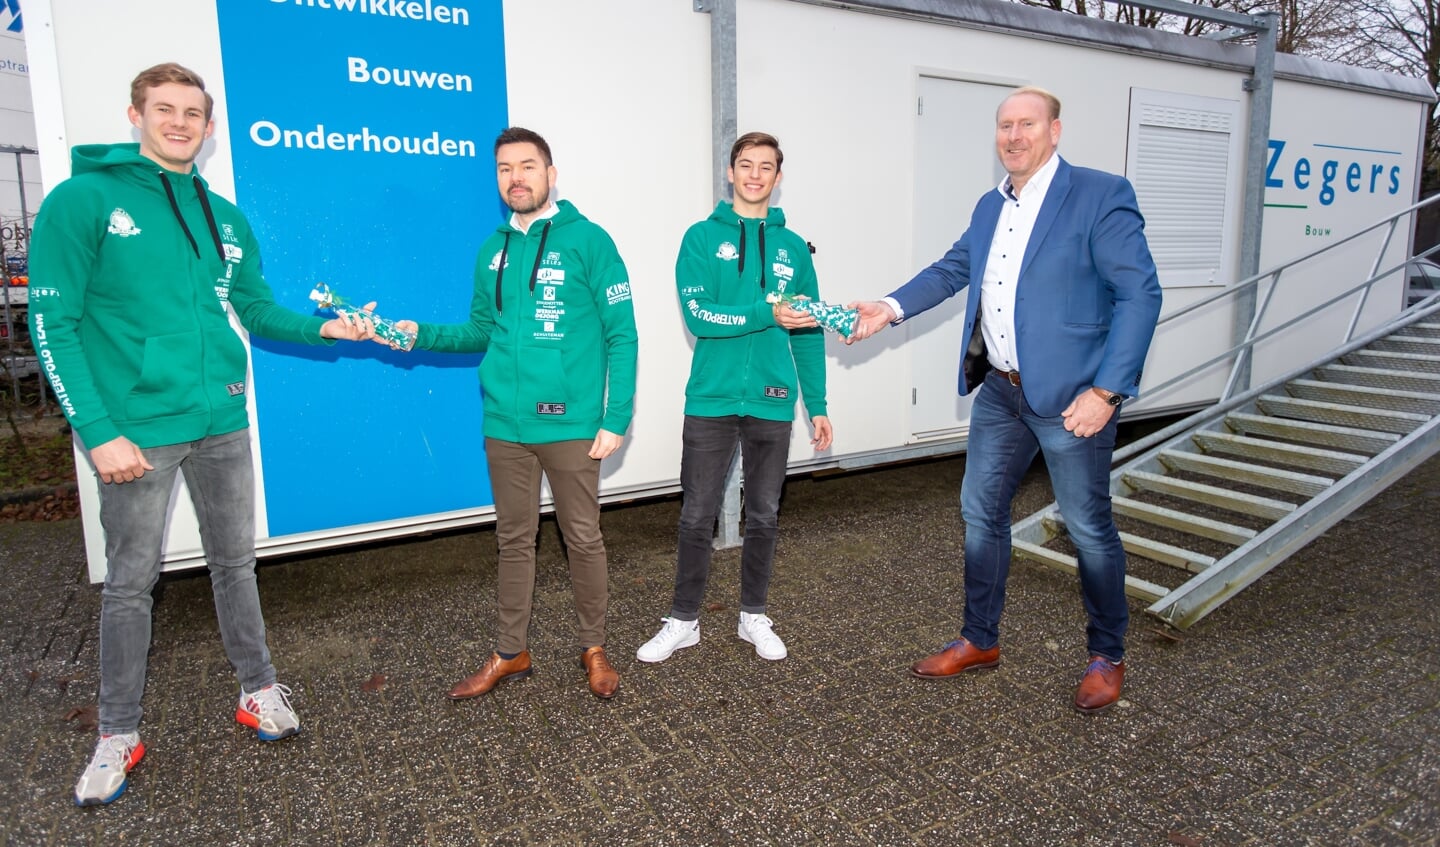 Op de foto (van links naar rechts): Lars ten Broek, Kevin Bijsterbosch, Marnick Snel en Johan Staring.